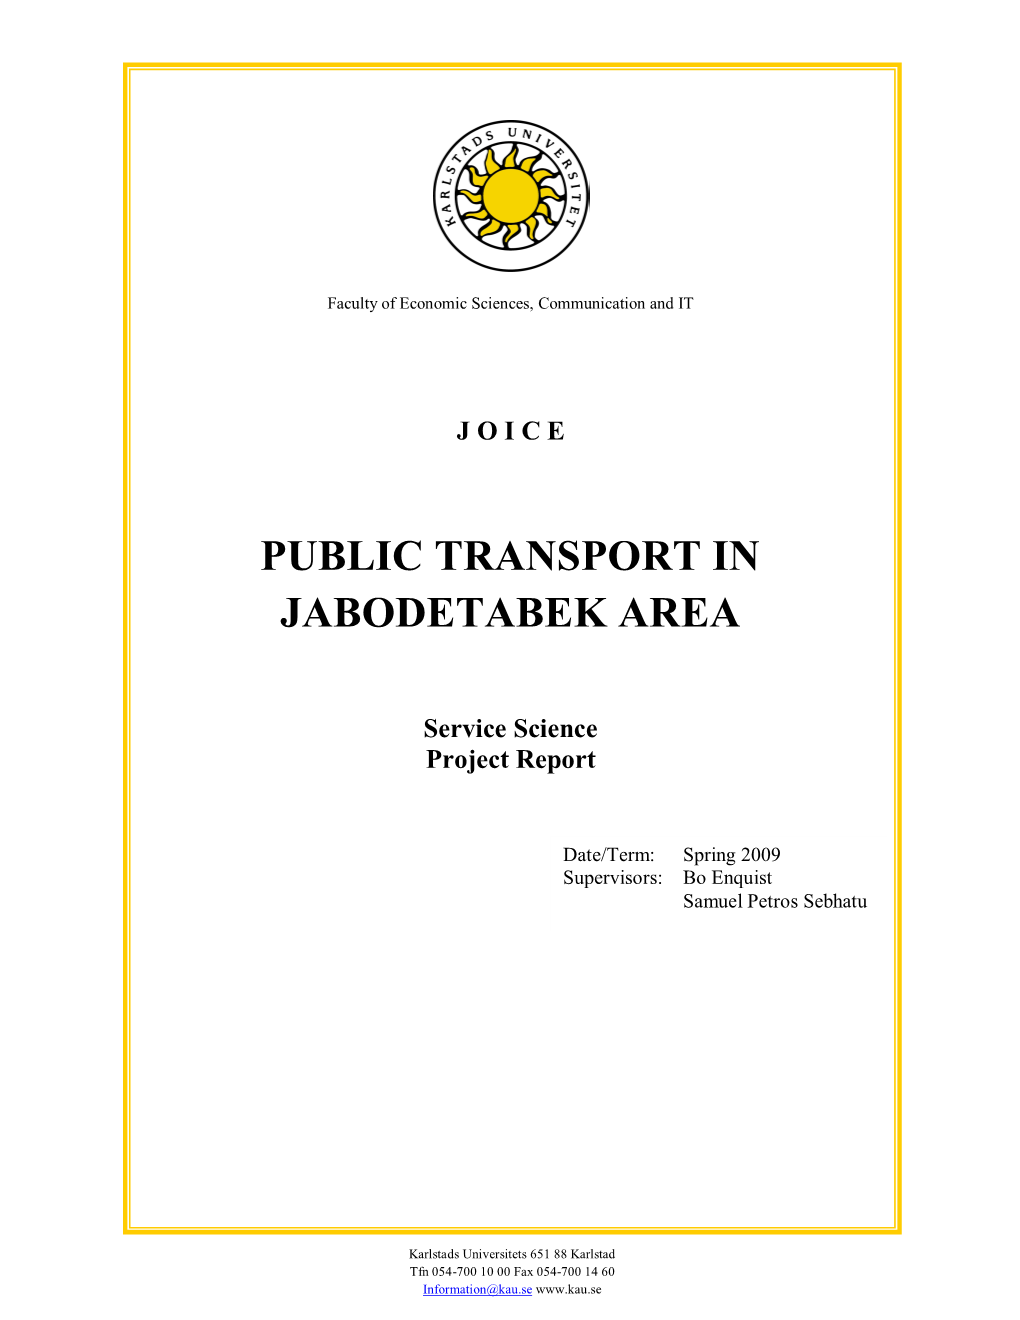 Public Transport in Jabodetabek Area